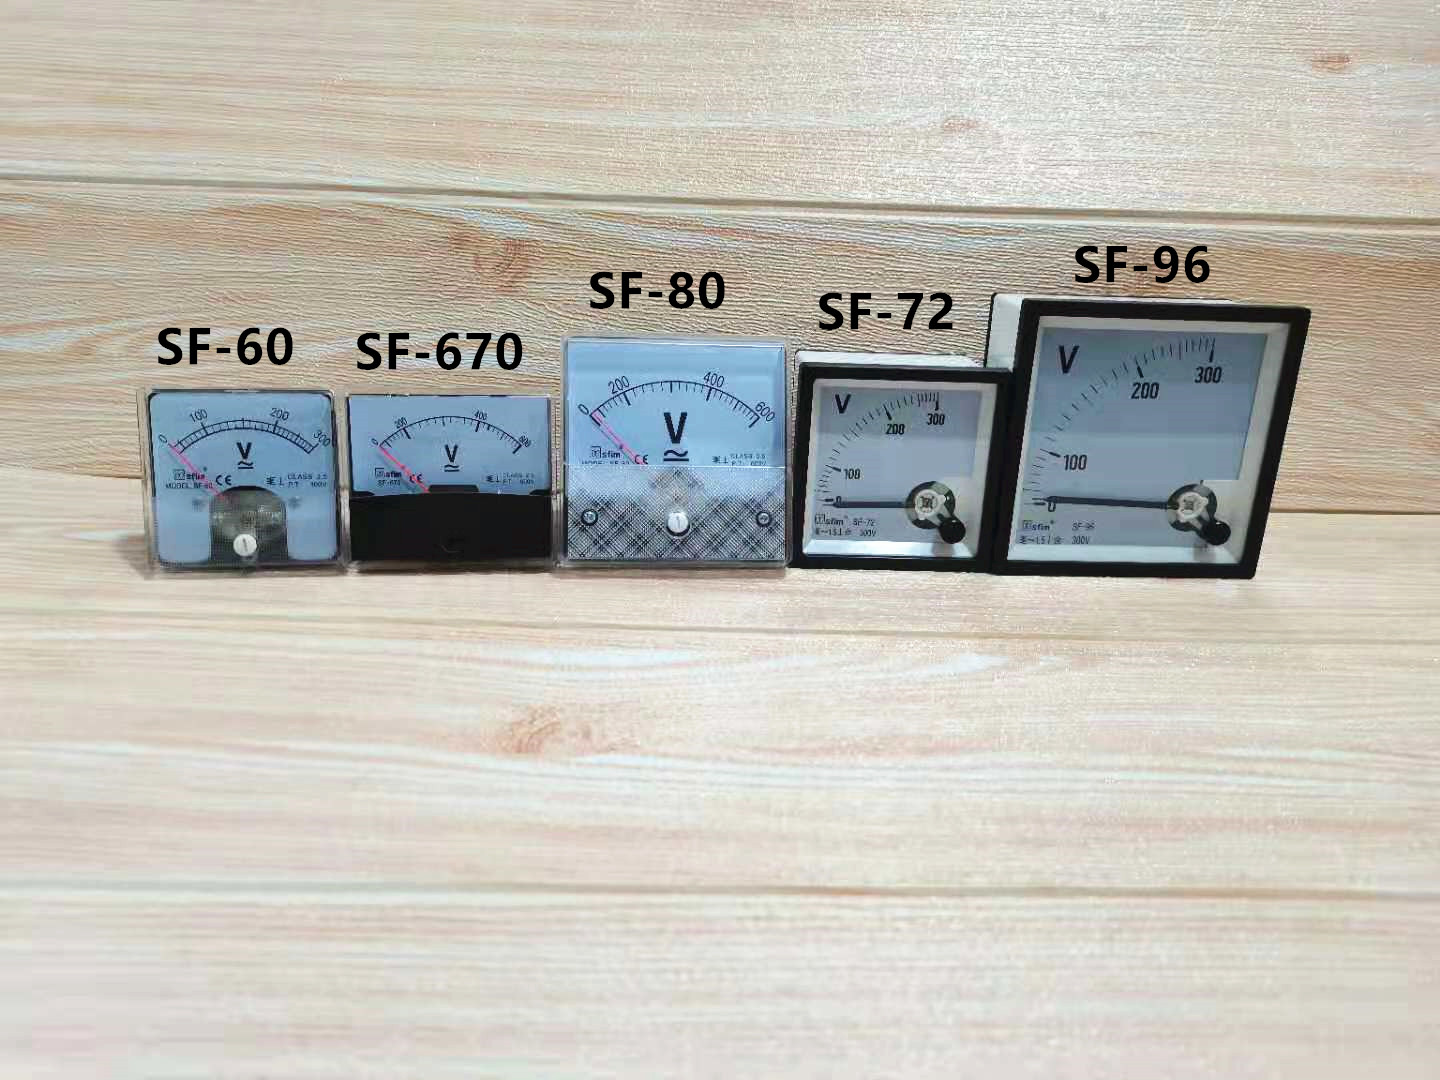 Panel Meter AC Voltmeter 300V 600V SF-60 SF-670 SF-80 SF-72 SF-96